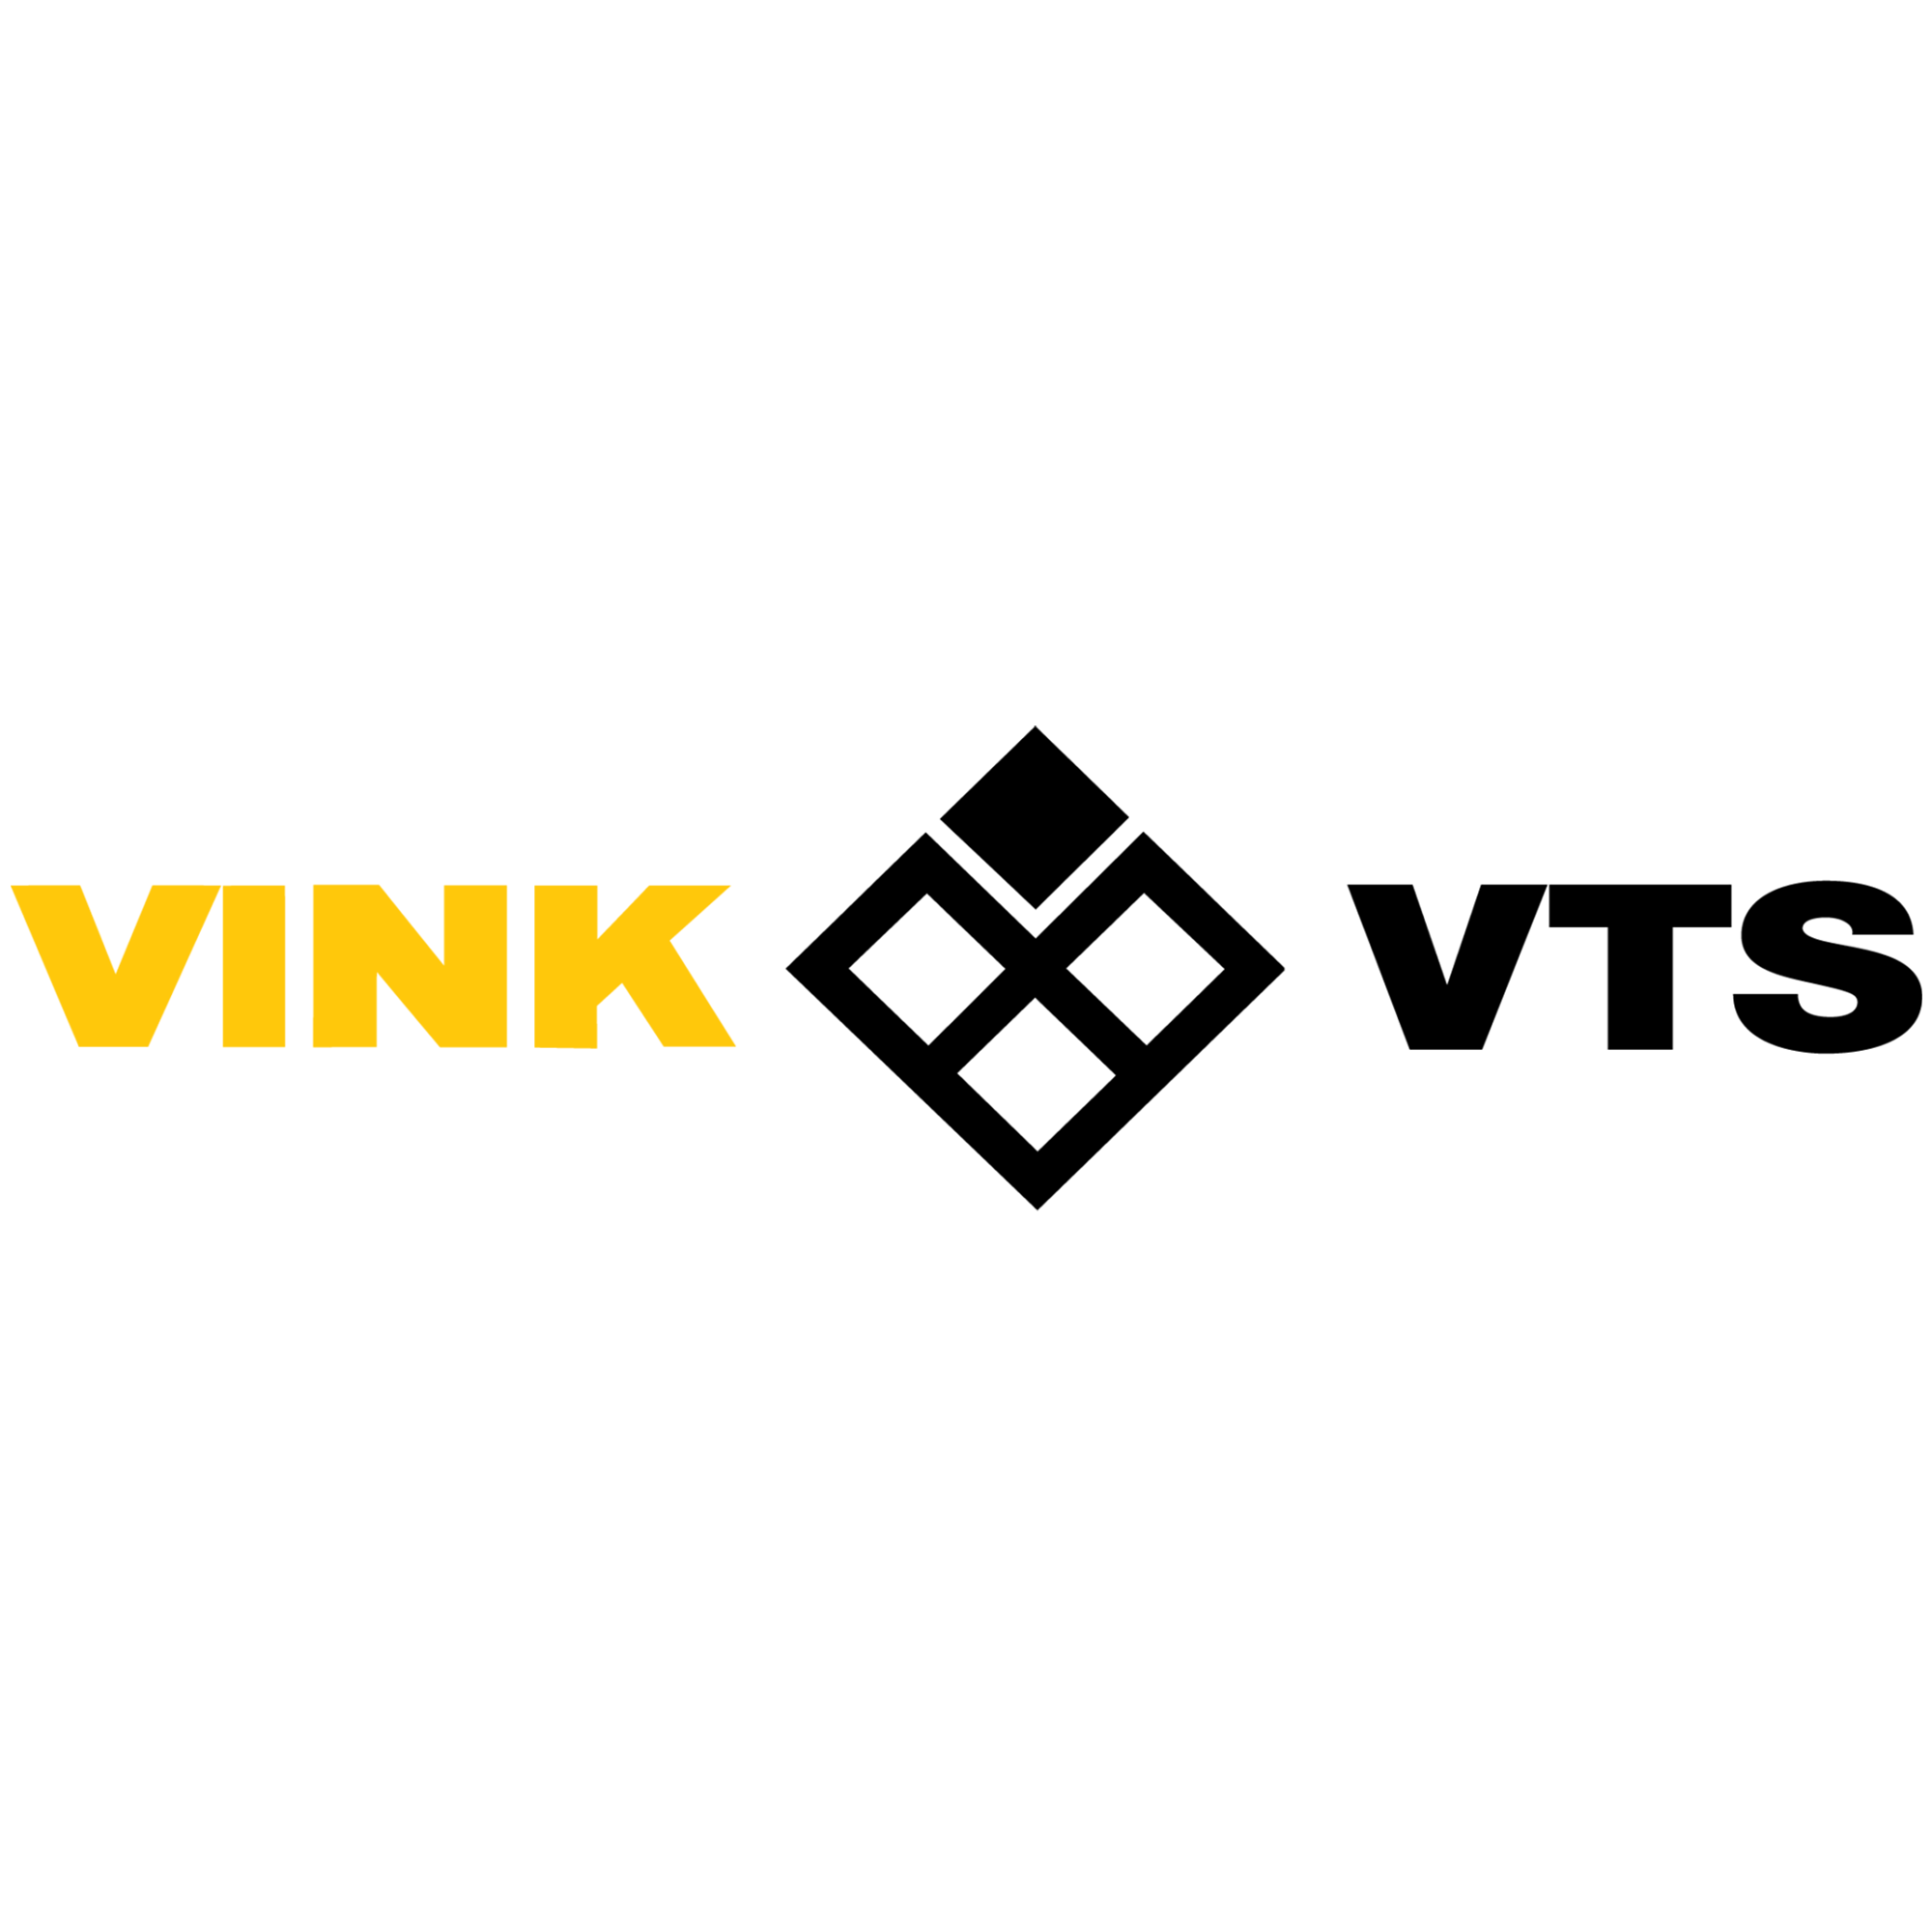 "VINK_LOGO"